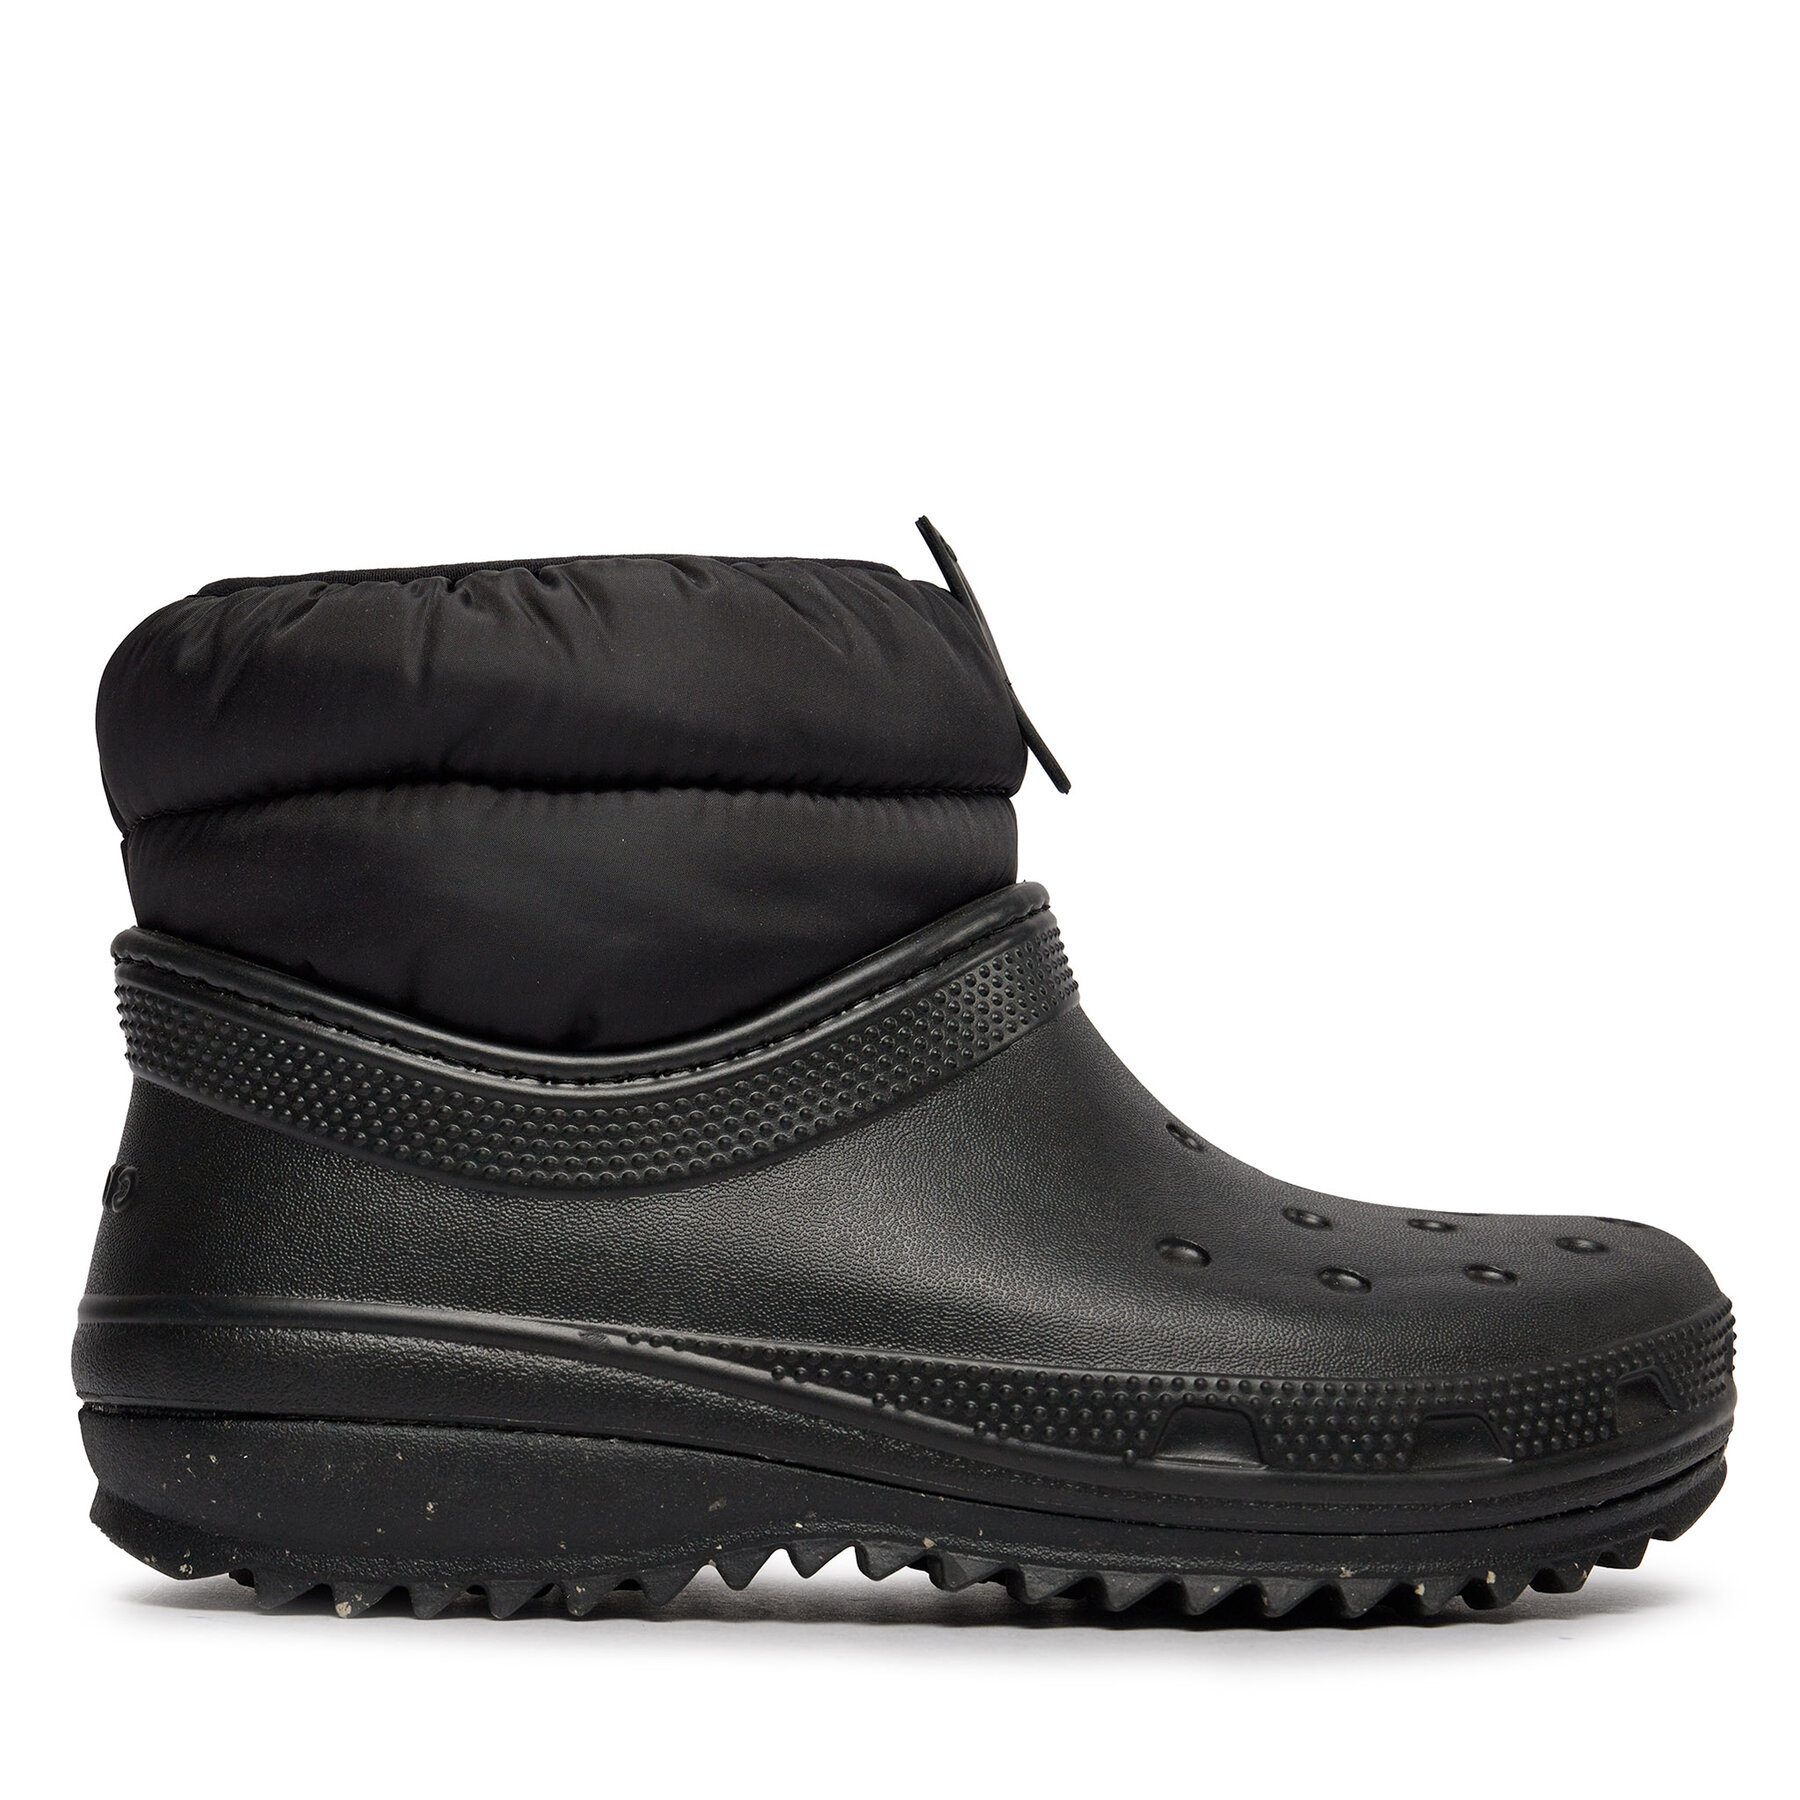 Comprar en oferta Crocs Women's Classic Neo Puff Shorty Boot black